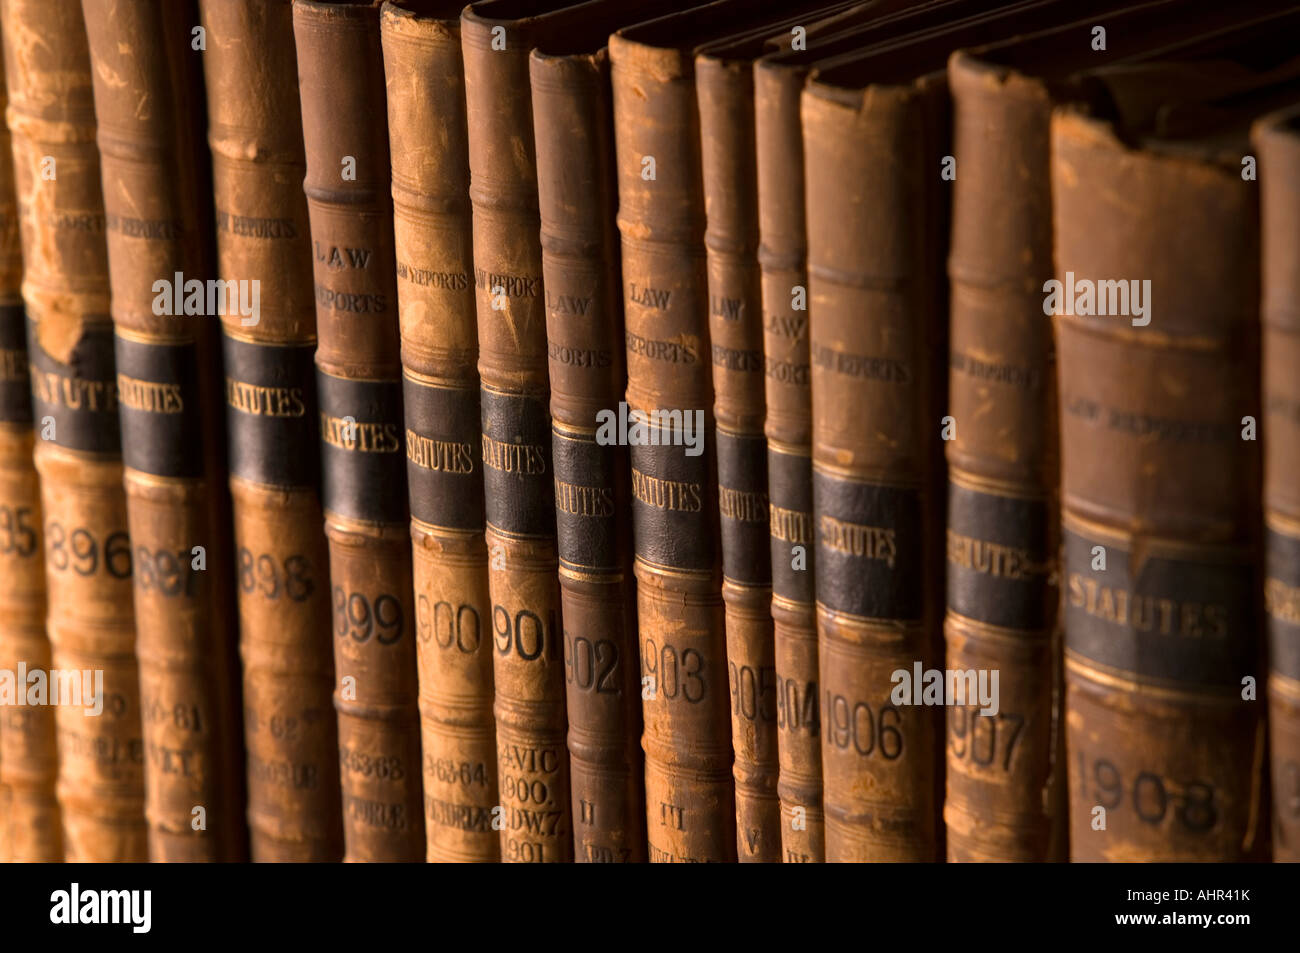 Zeile des alten englischen Statuten Gesetzesbücher. Stockfoto